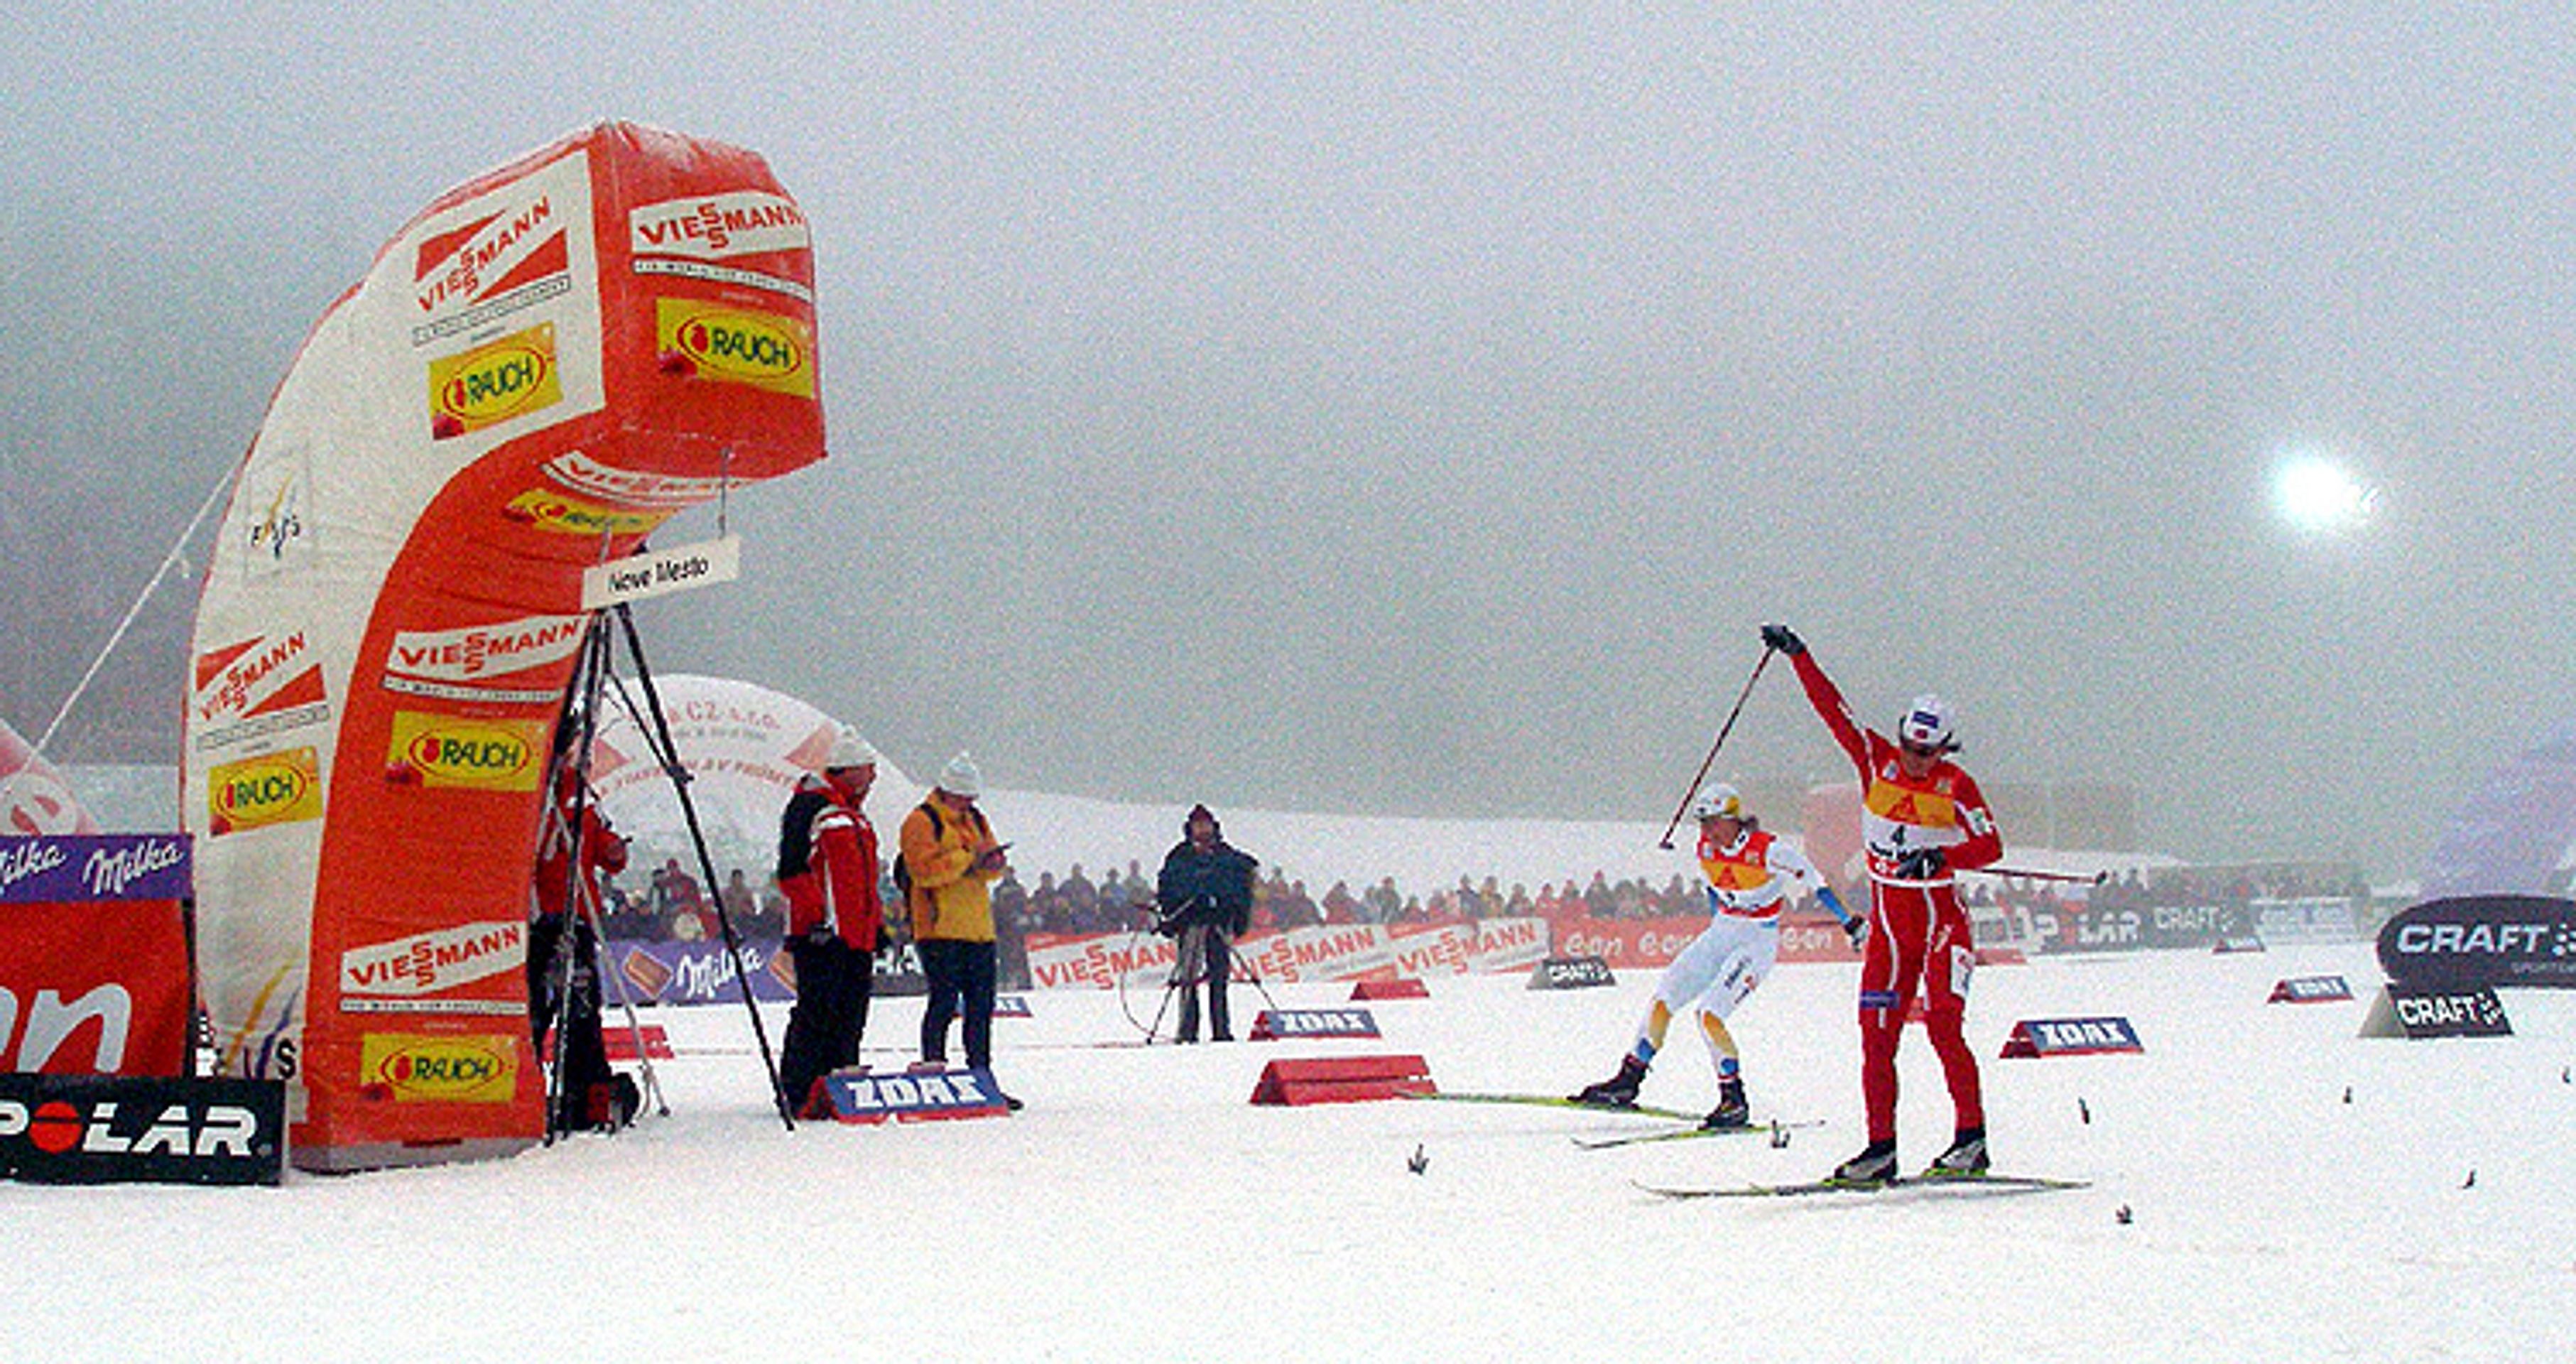 Tour de Ski v Novém Městě na Moravě - Bauer zvítězil v Novém Městě i dnes a vede Tour de Ski (5/12)